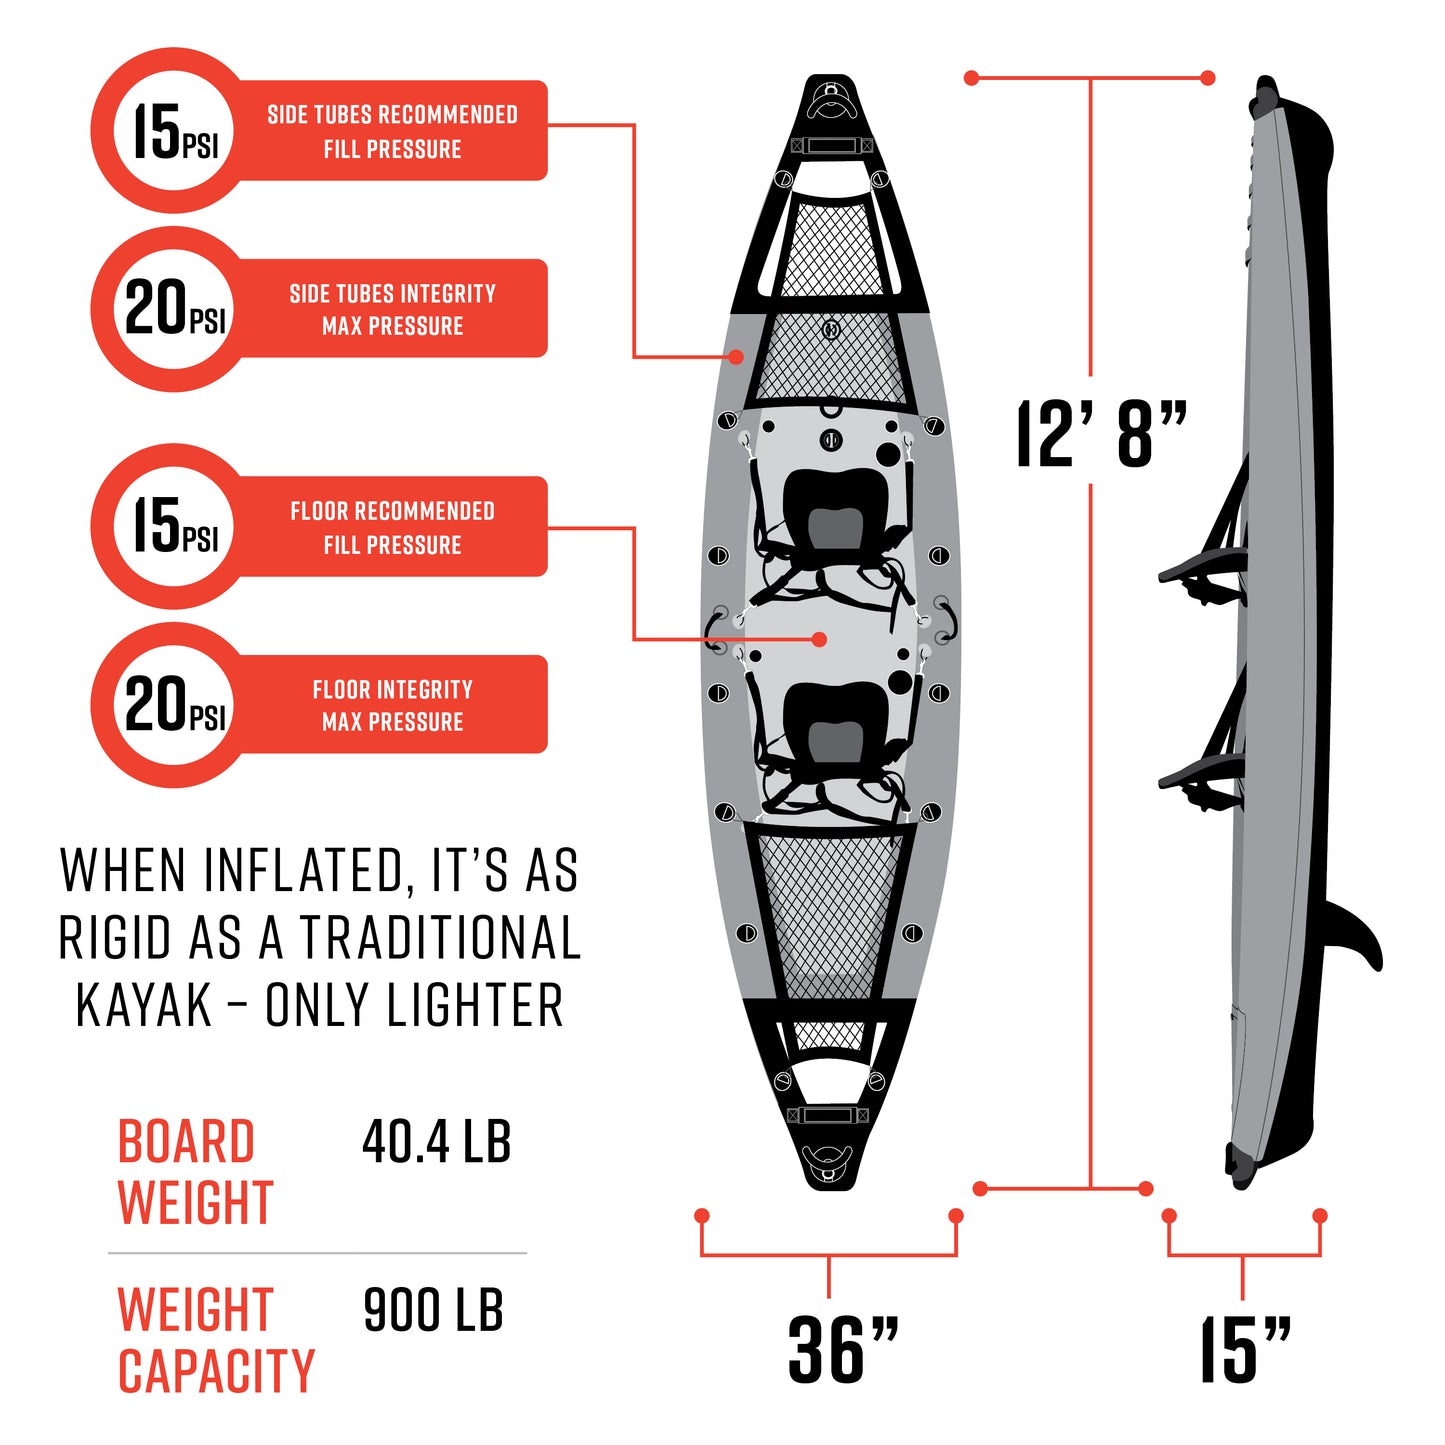 Vista Inflatable Kayak